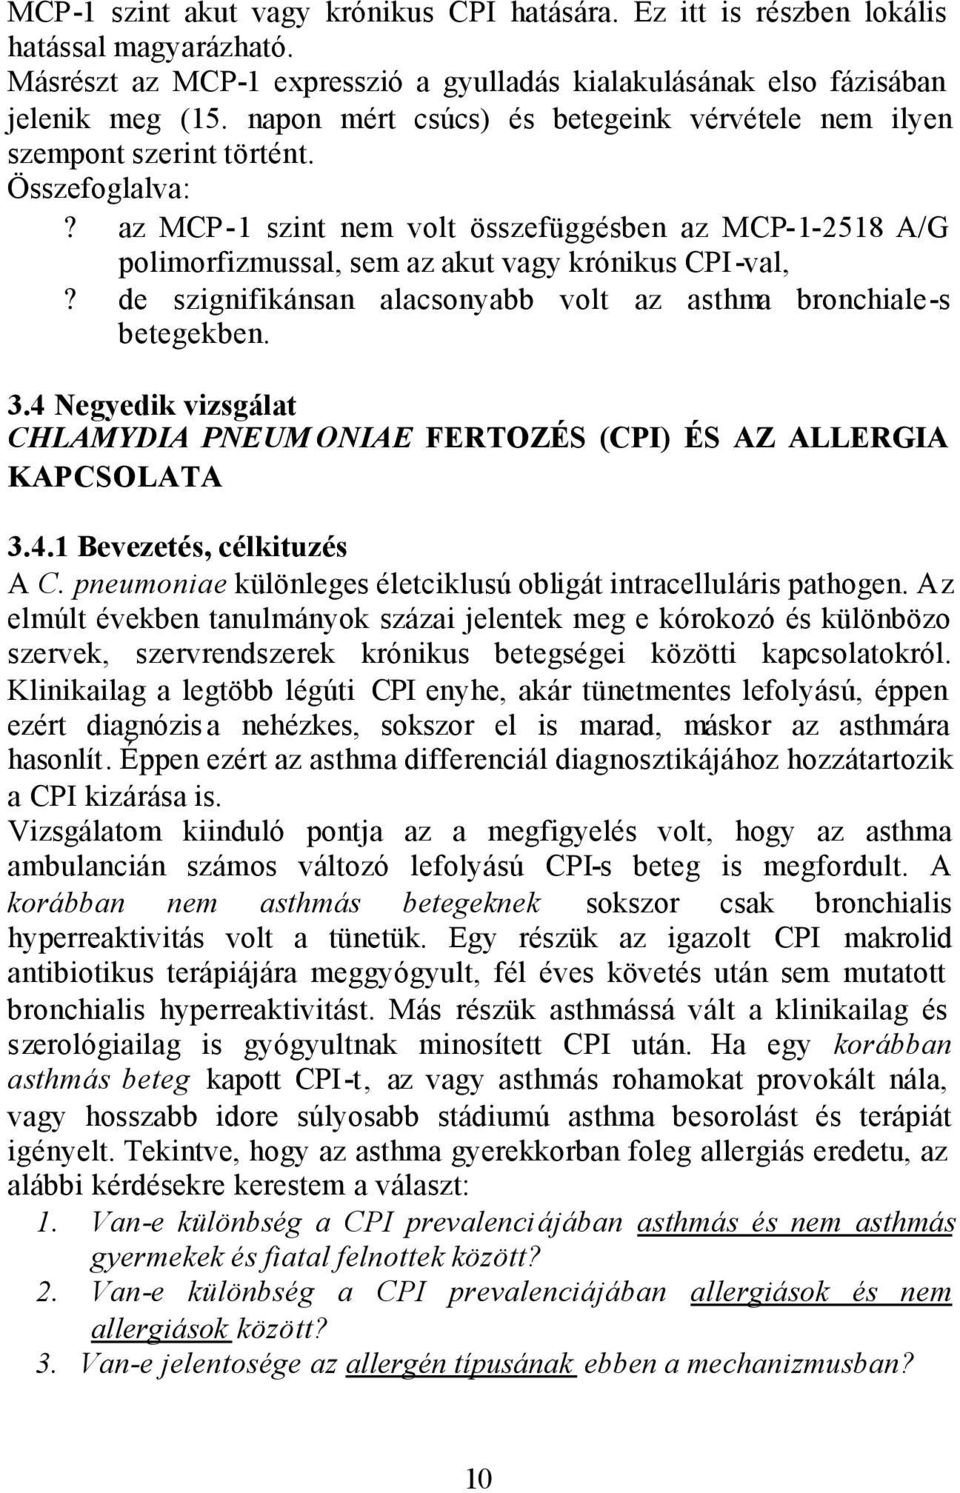 az MCP-1 szint nem volt összefüggésben az MCP-1-2518 A/G polimorfizmussal, sem az akut vagy krónikus CPI-val,? de szignifikánsan alacsonyabb volt az asthma bronchiale-s betegekben. 3.